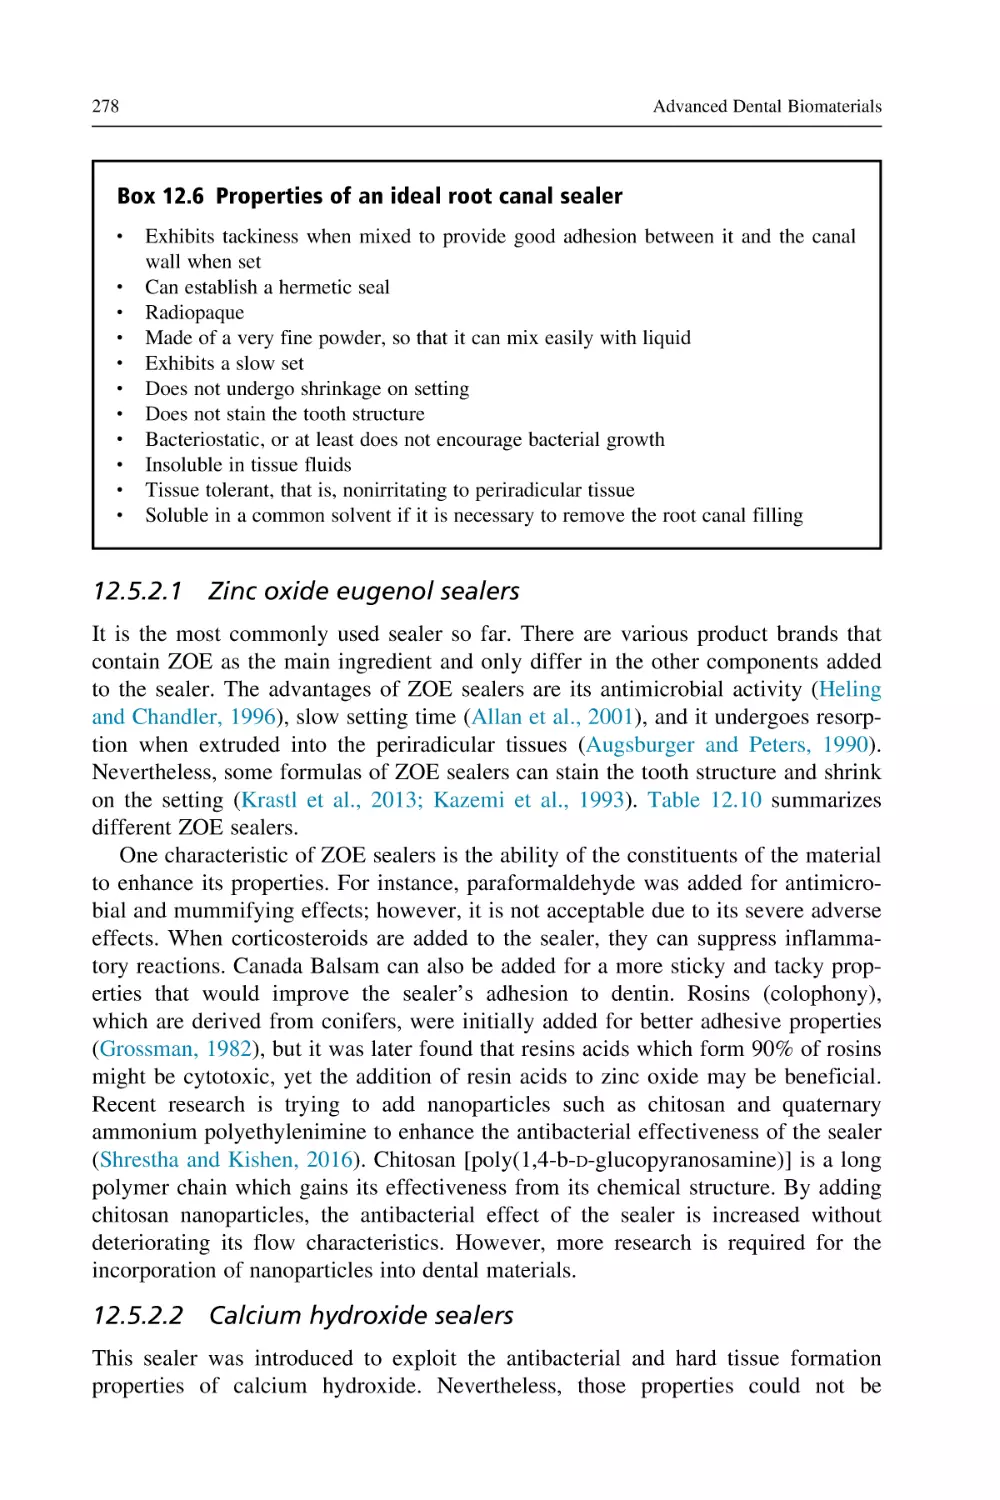 12.5.2.1 Zinc oxide eugenol sealers
12.5.2.2 Calcium hydroxide sealers